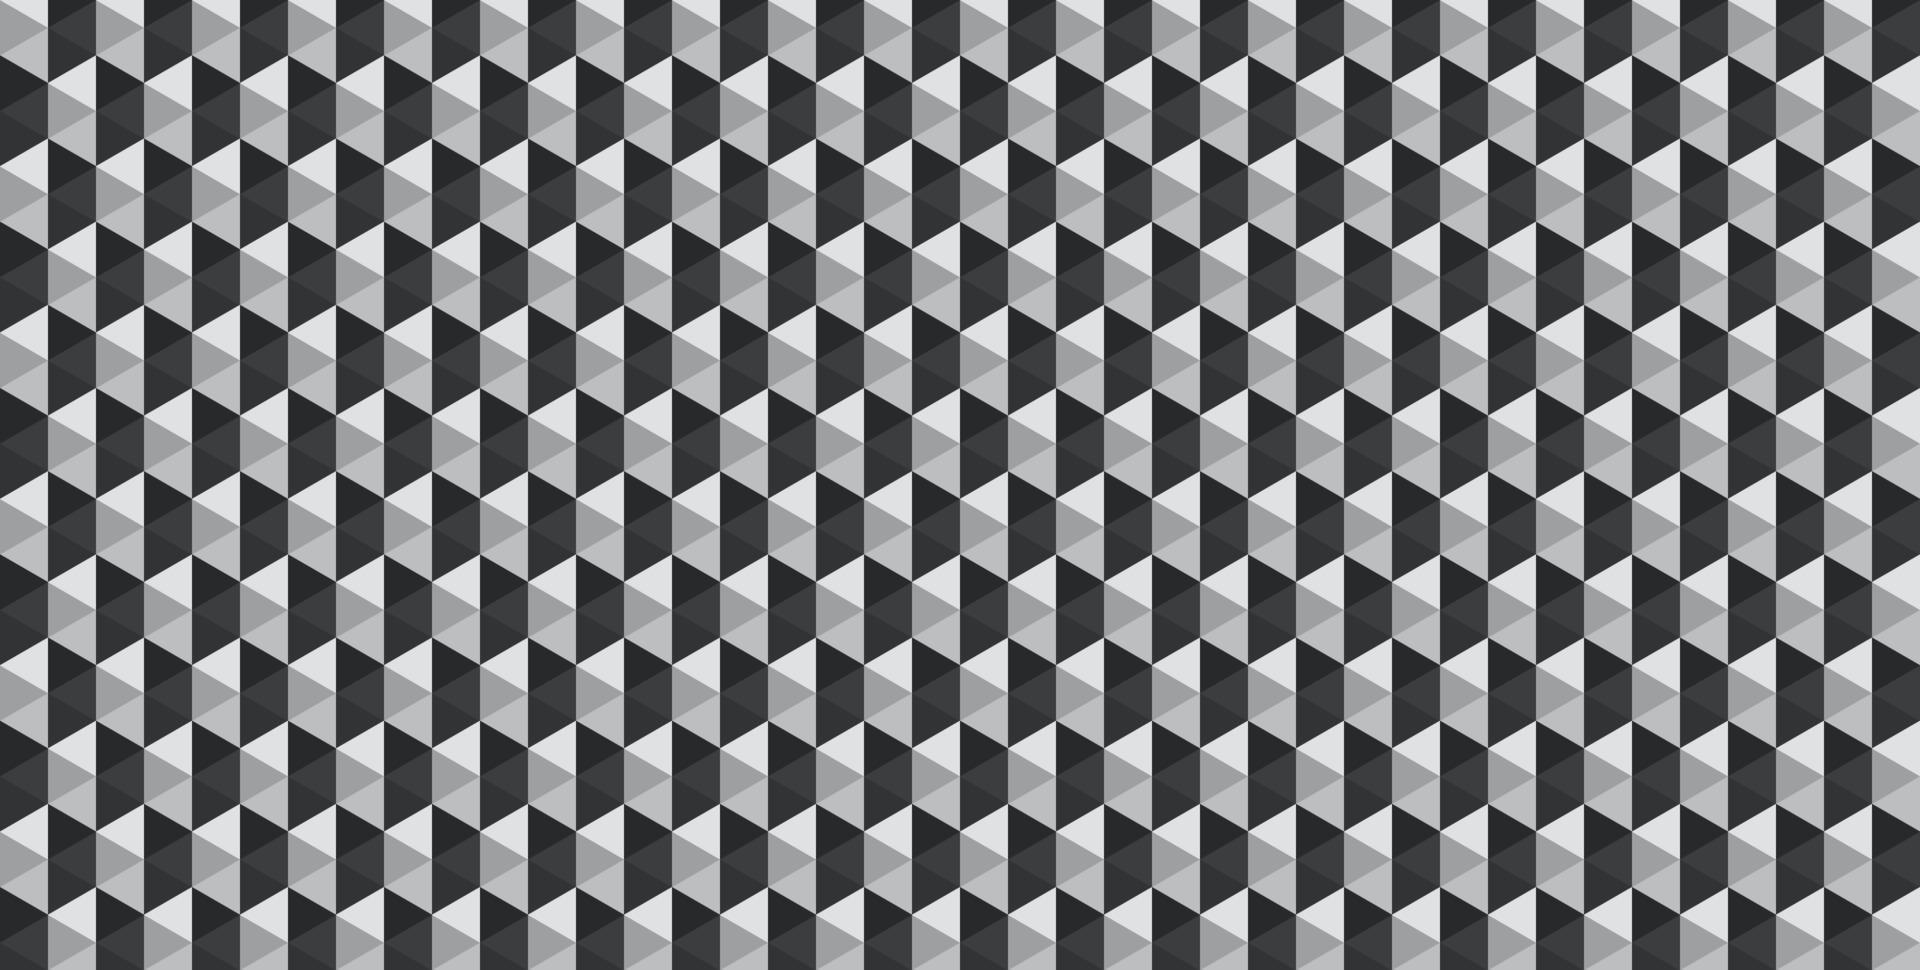 abstrakte geometrische dreieckform mit schwarzem und chrommusterfarbhintergrund. vektor